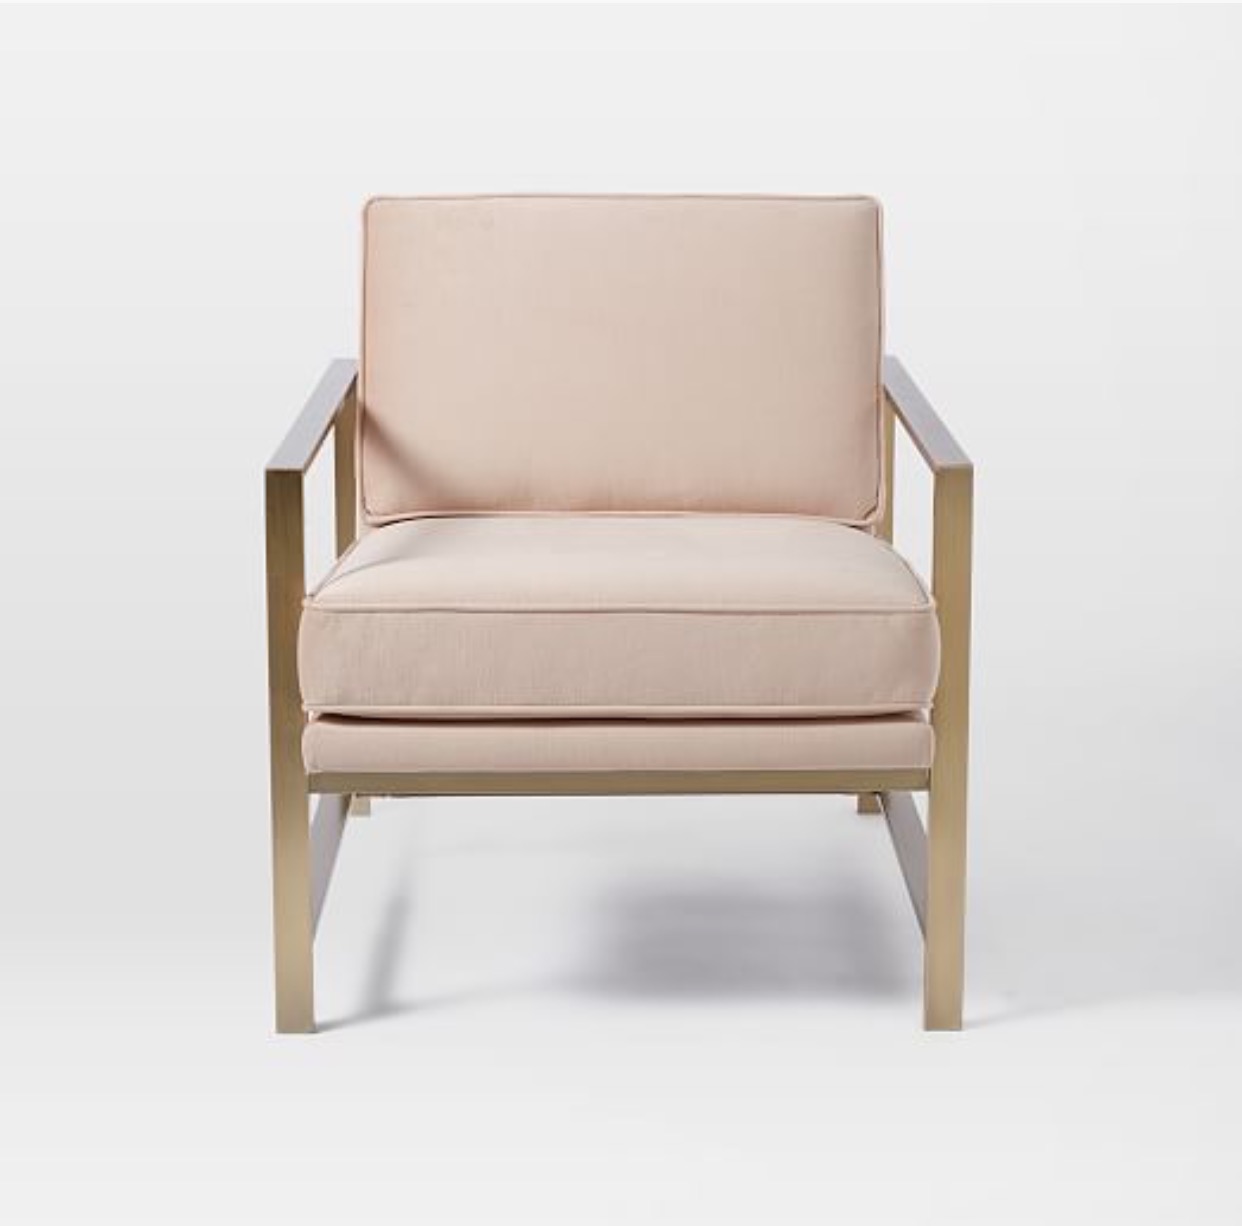 Avery Street Design Blog Gimme Dat Chair